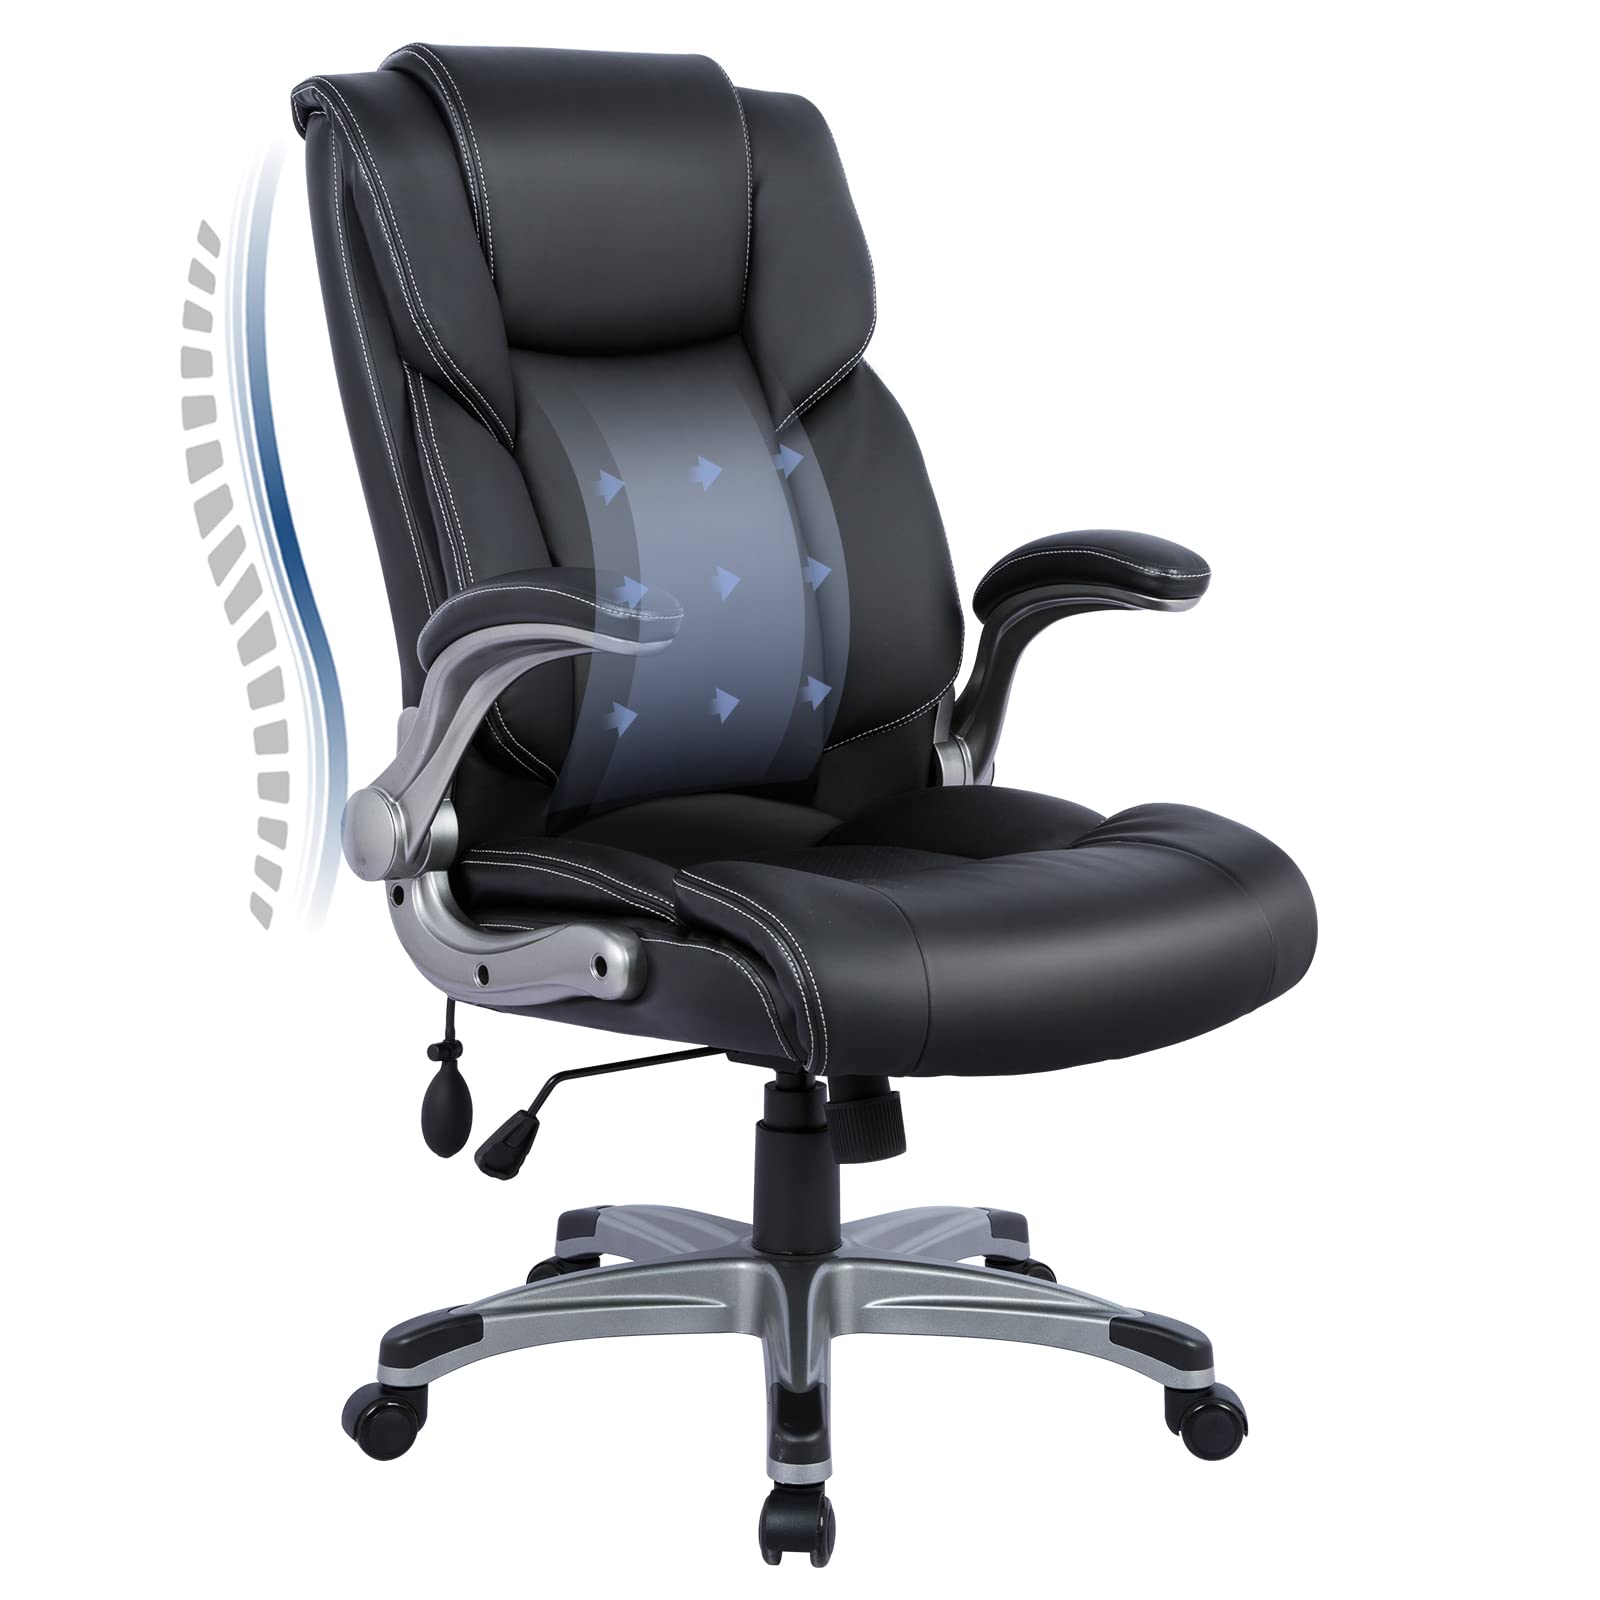 COLAMY Cadeira executiva de escritório com encosto alto - cadeira de couro ergonômica para computador doméstico